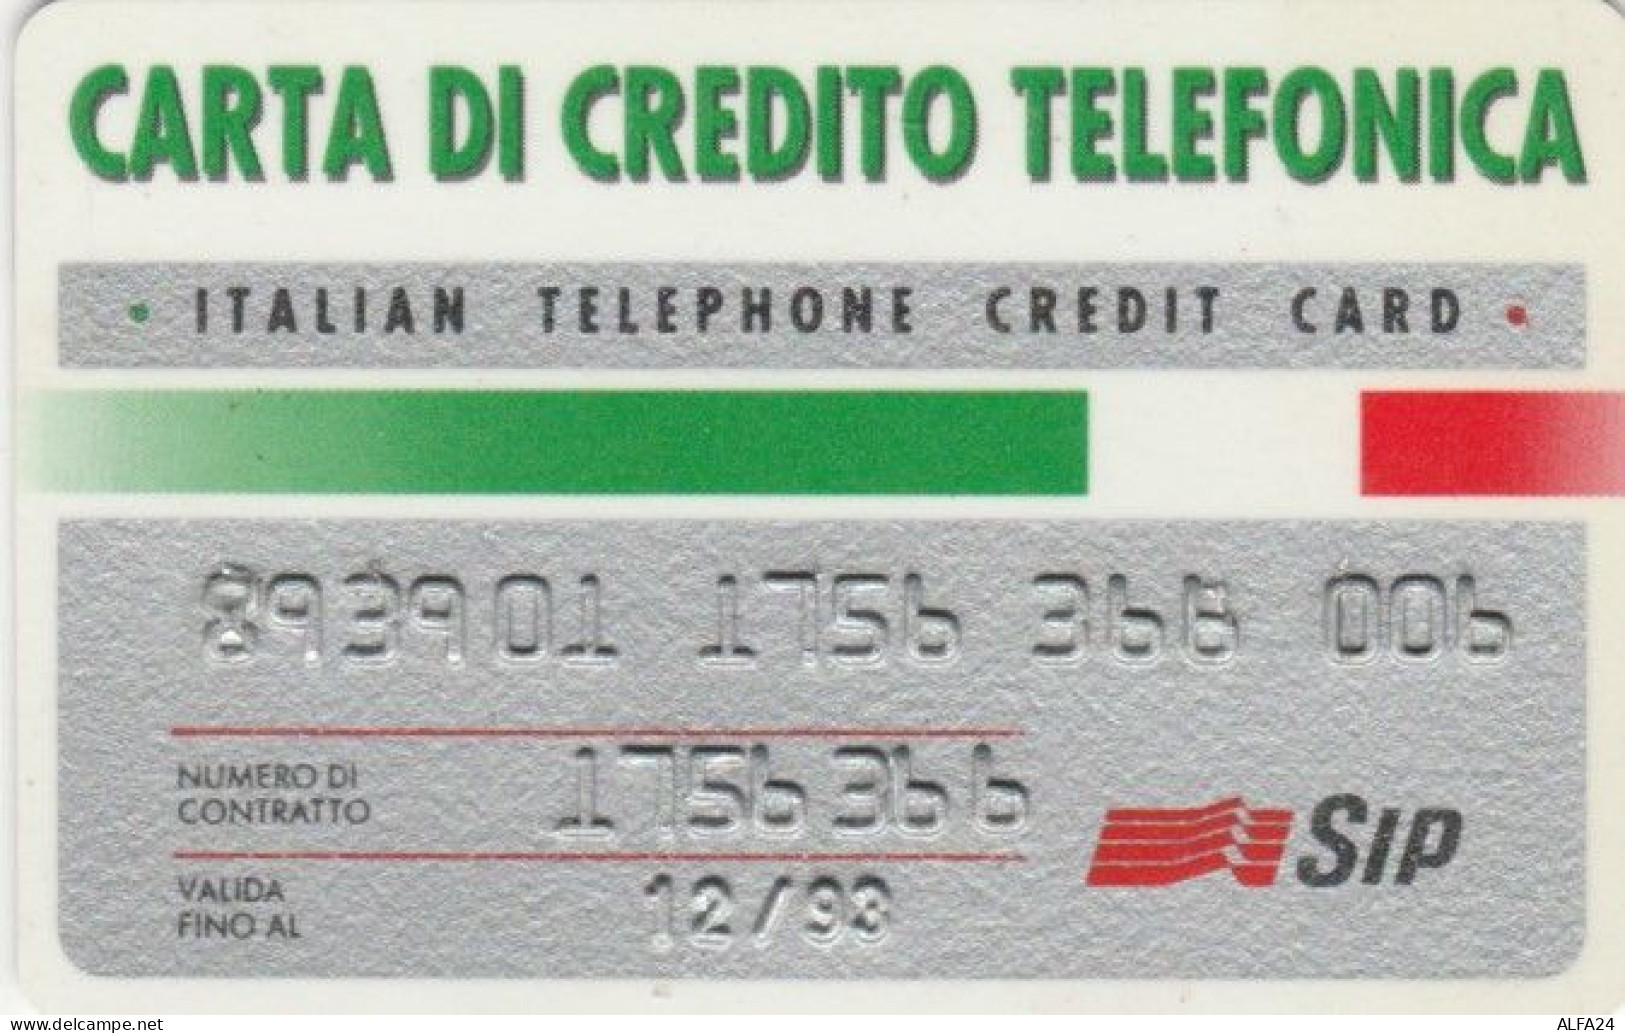 CARTA DI CREDITO TELEFONICA 12/93 (PY1648 - Special Uses